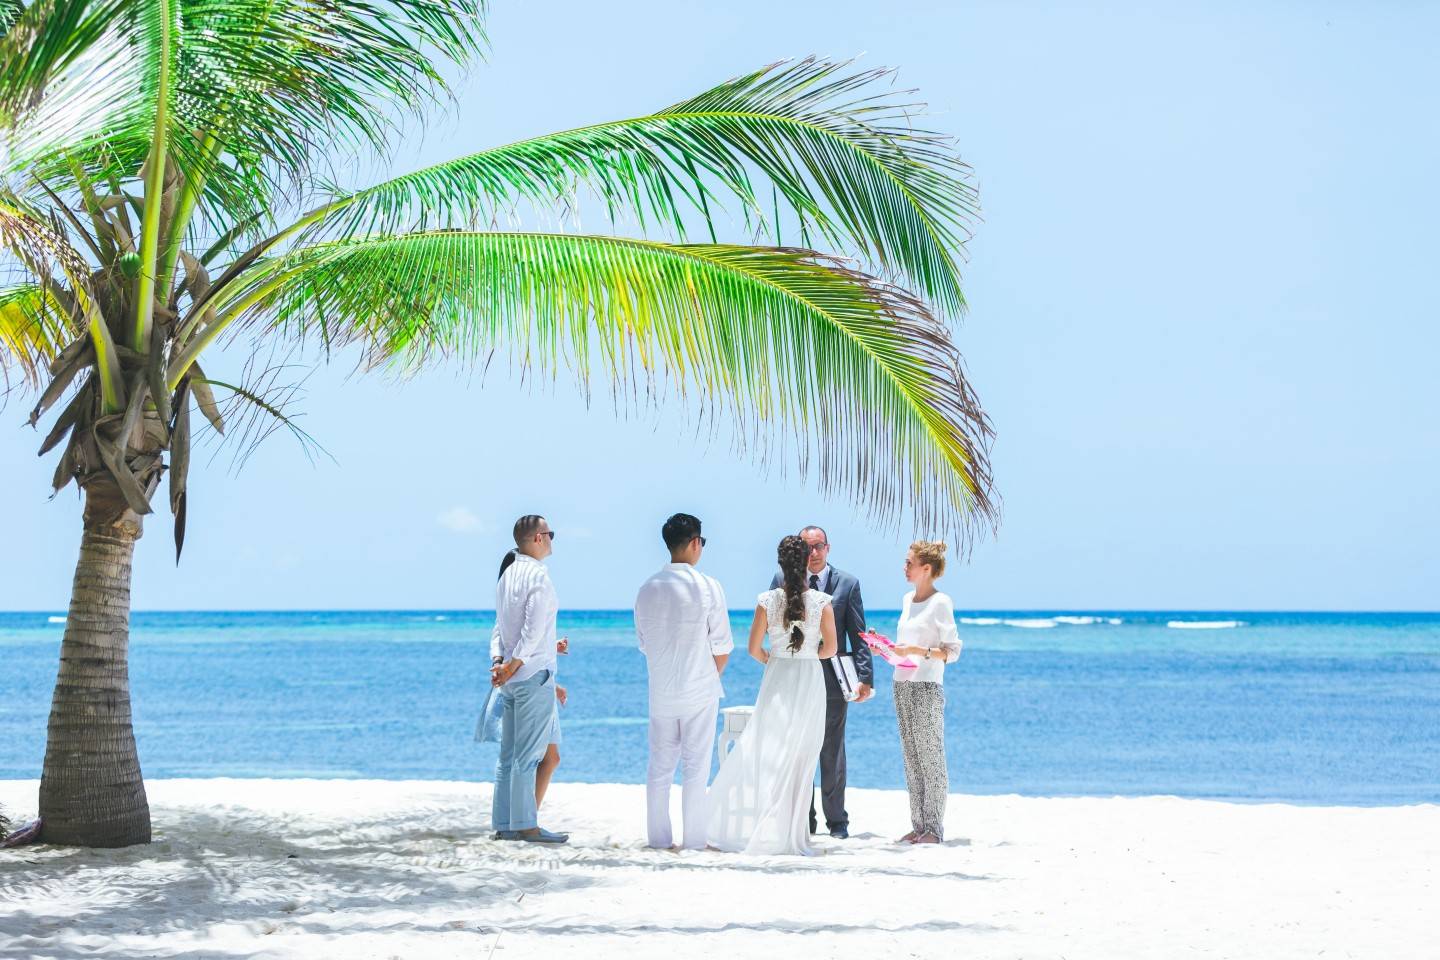 Организация свадьбы на островах – самые популярные направления